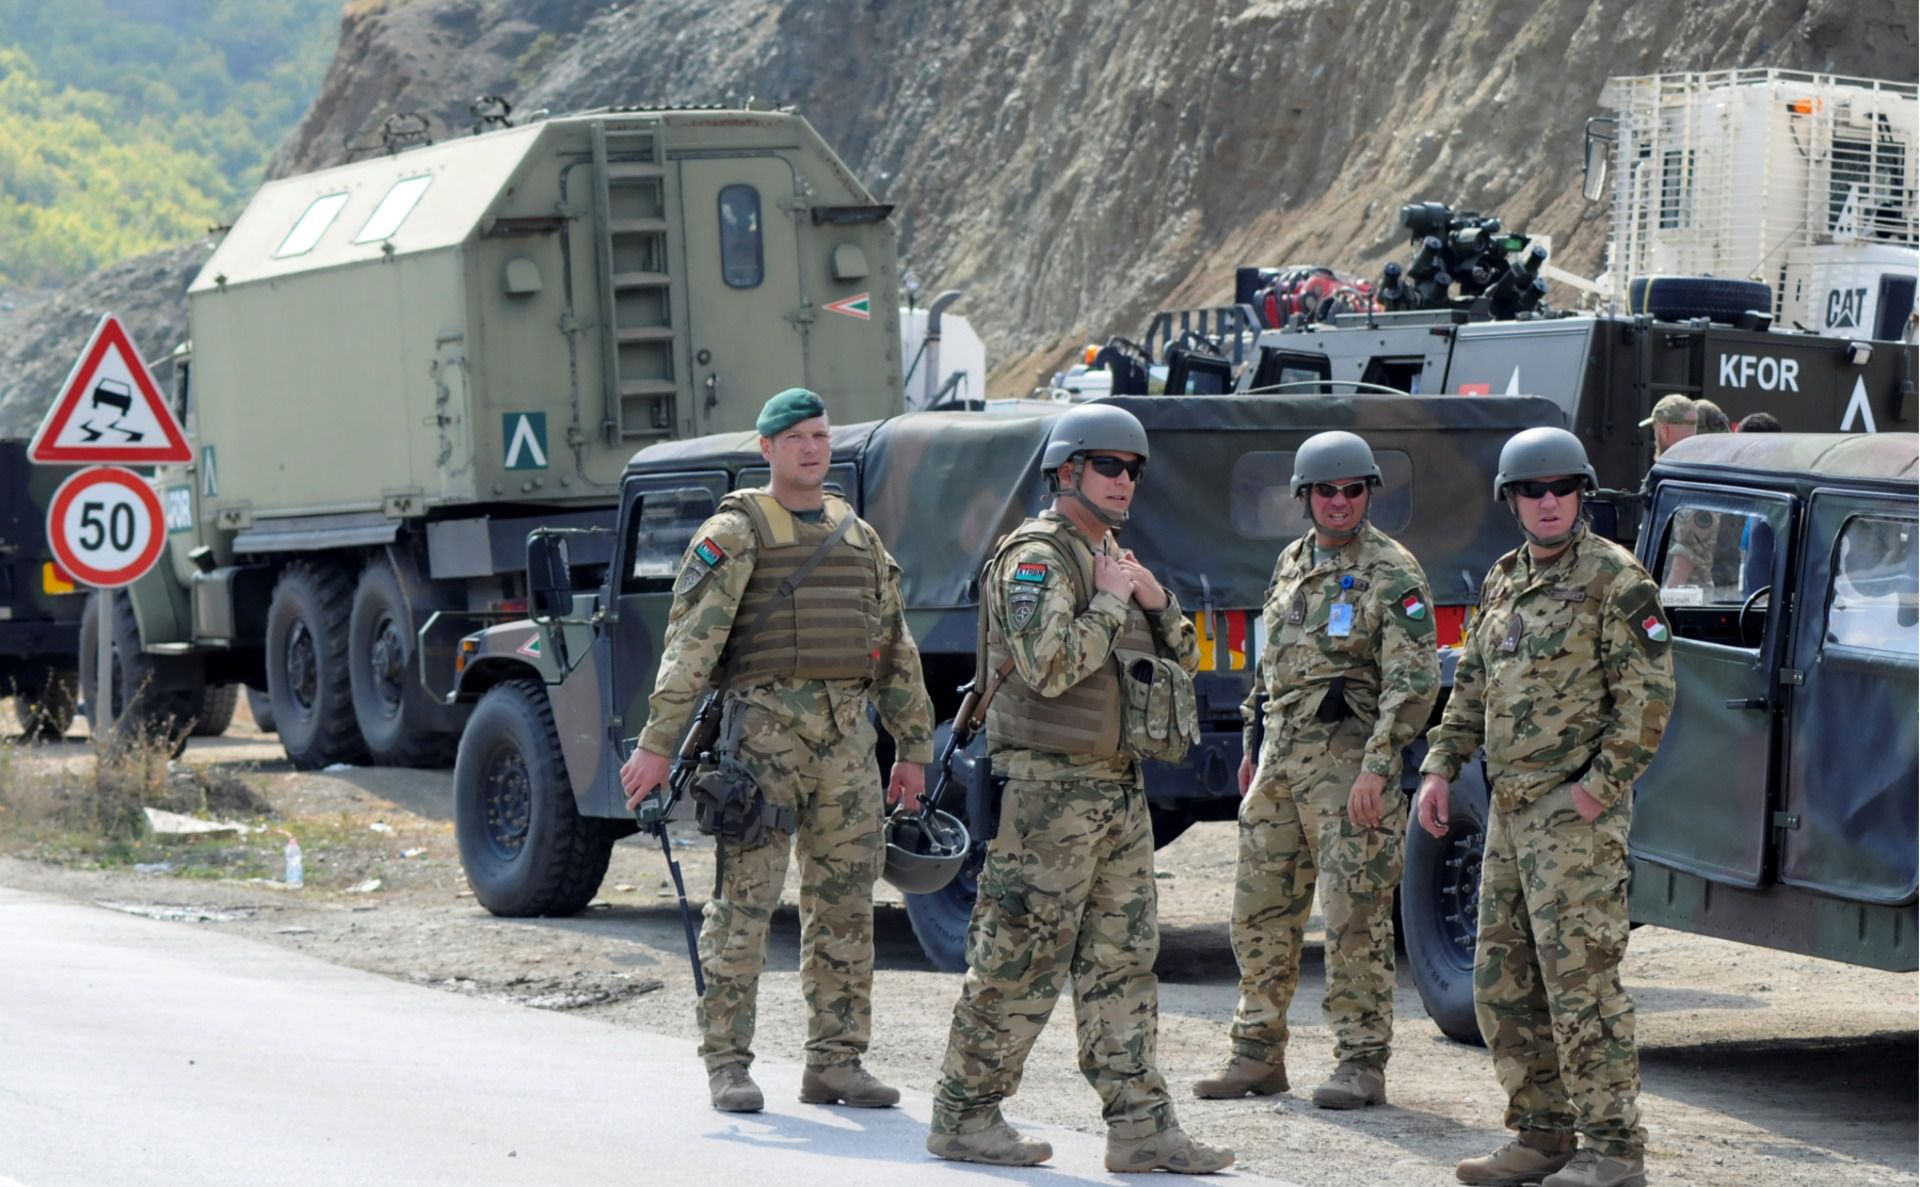 Армія Сербії приведена в стан підвищеної готовності через інцидент на кордоні з Косово, коли косовські спецназівці затримали сербів. У Сербії армію і підрозділи поліцейського спецназу привели в стан підвищеної готовності.